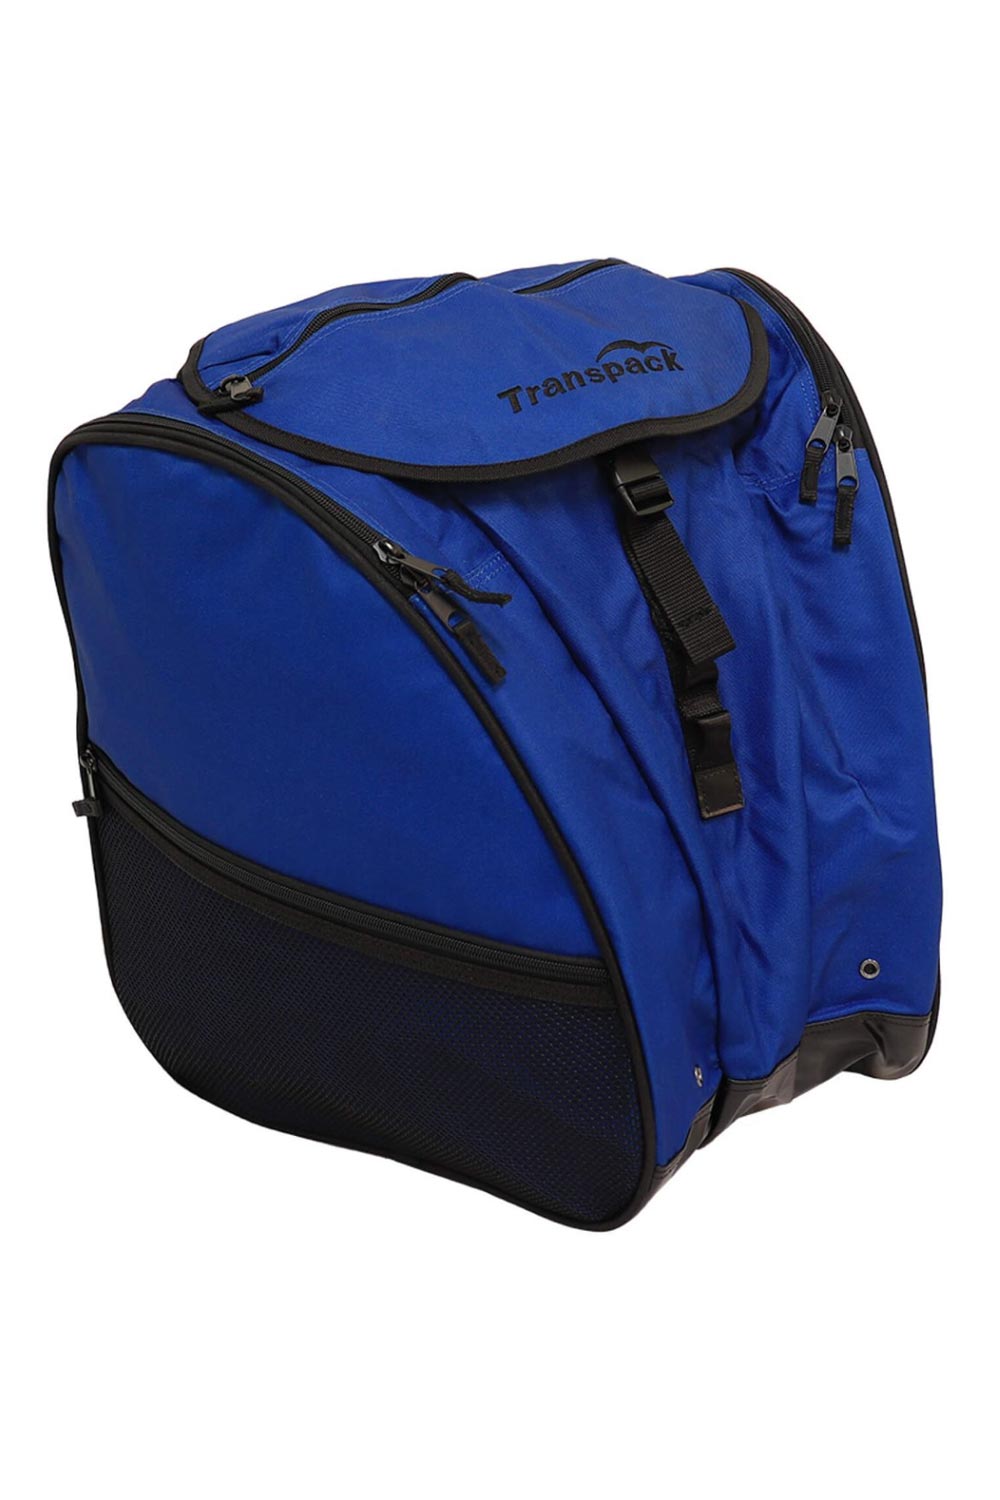 ski boot & gear backpack bag, cobalt blue and black